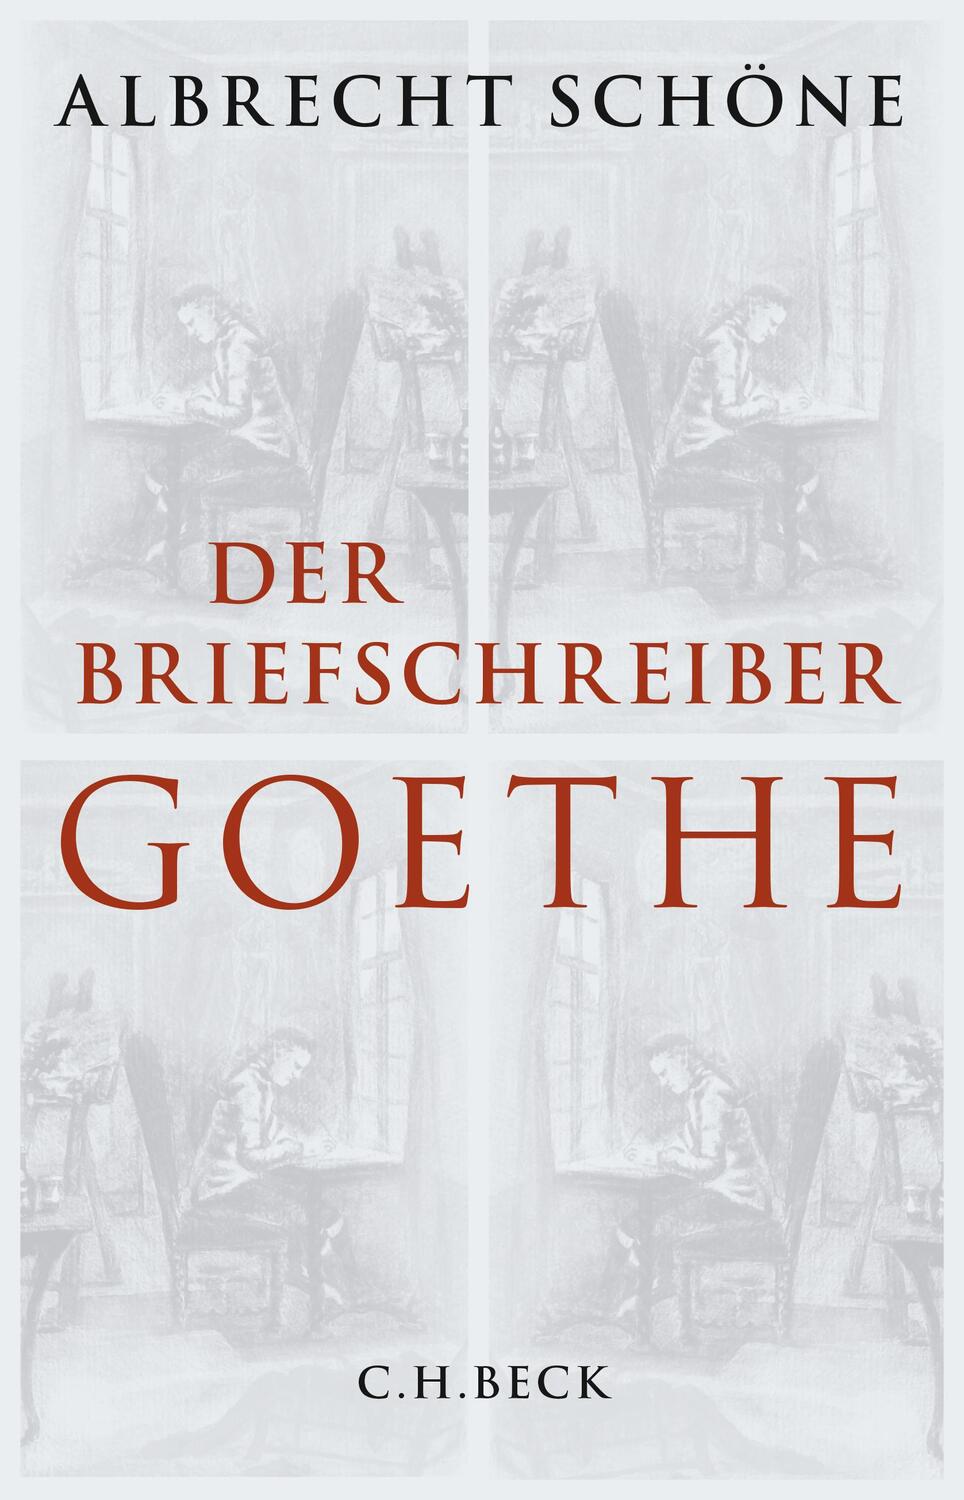 Der Briefschreiber Goethe - Schöne, Albrecht